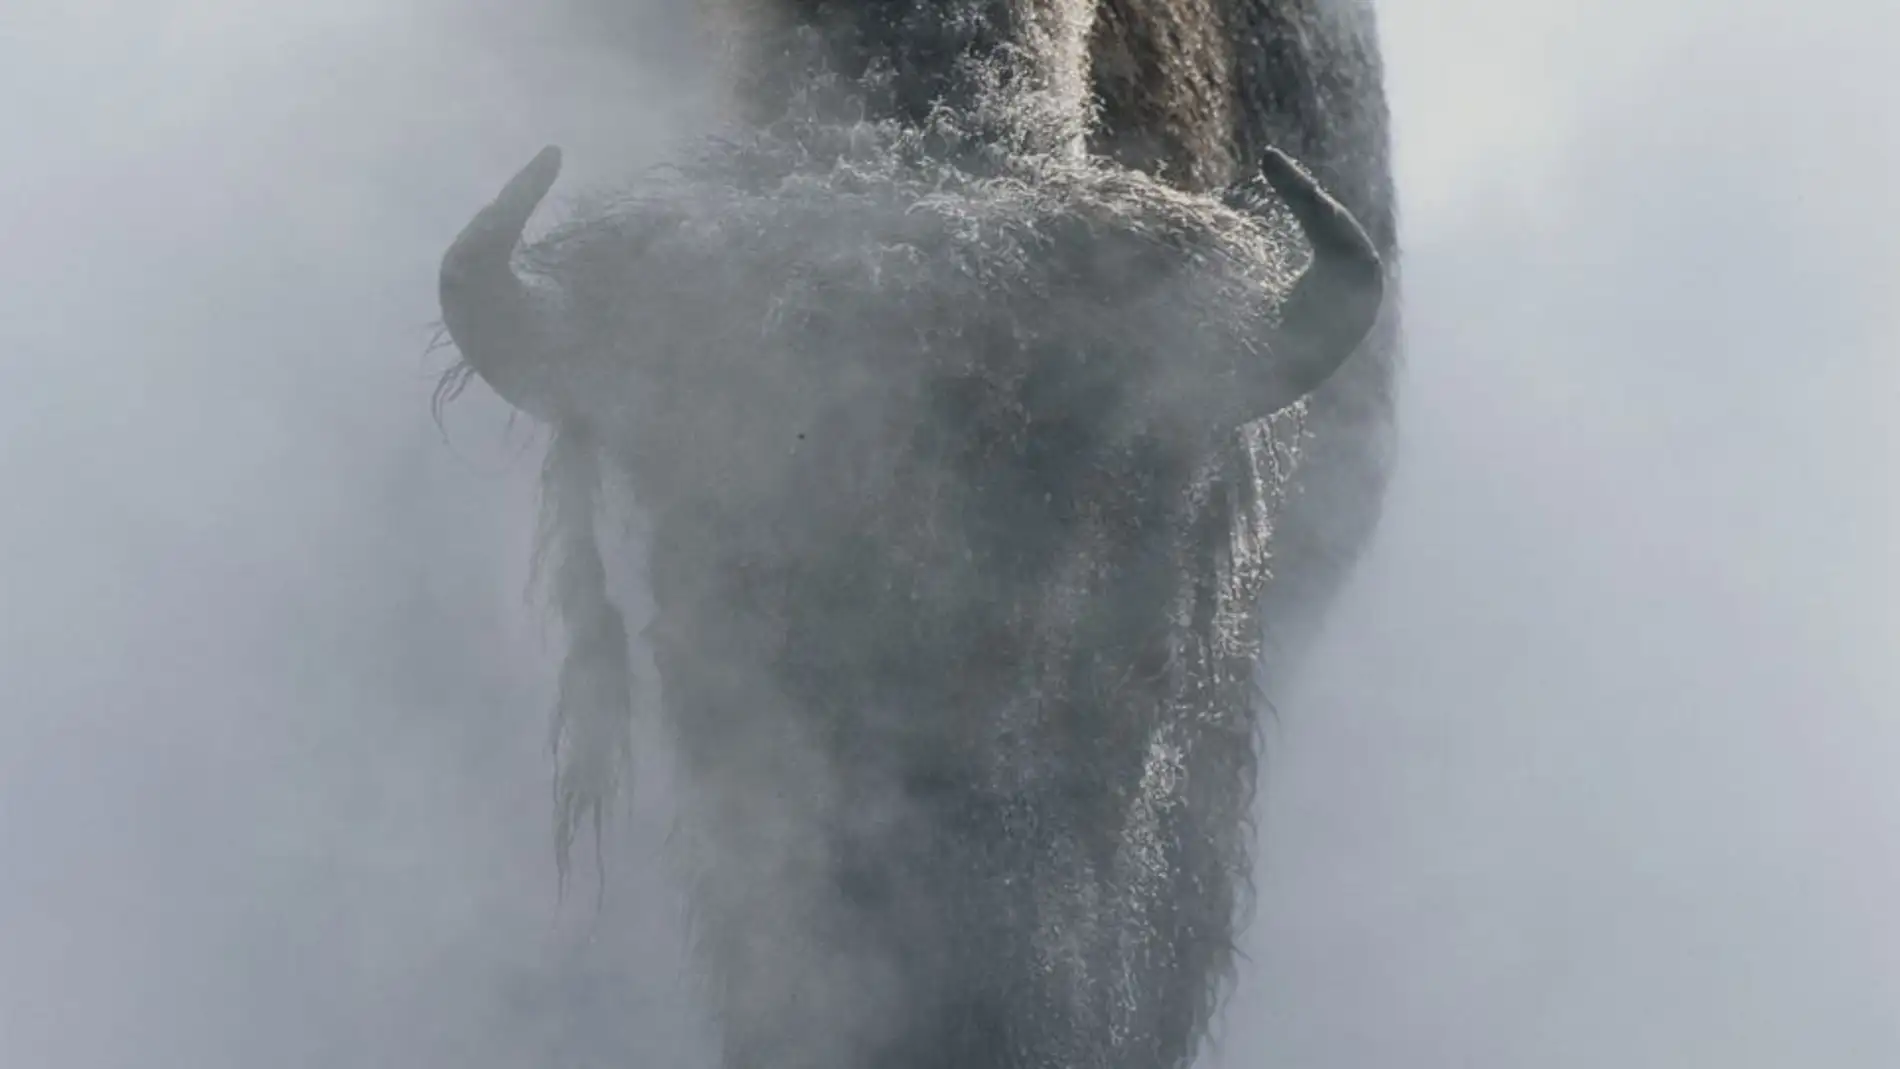 Un bisonte en la niebla en invierno, en el parque nacional de Yellowstone